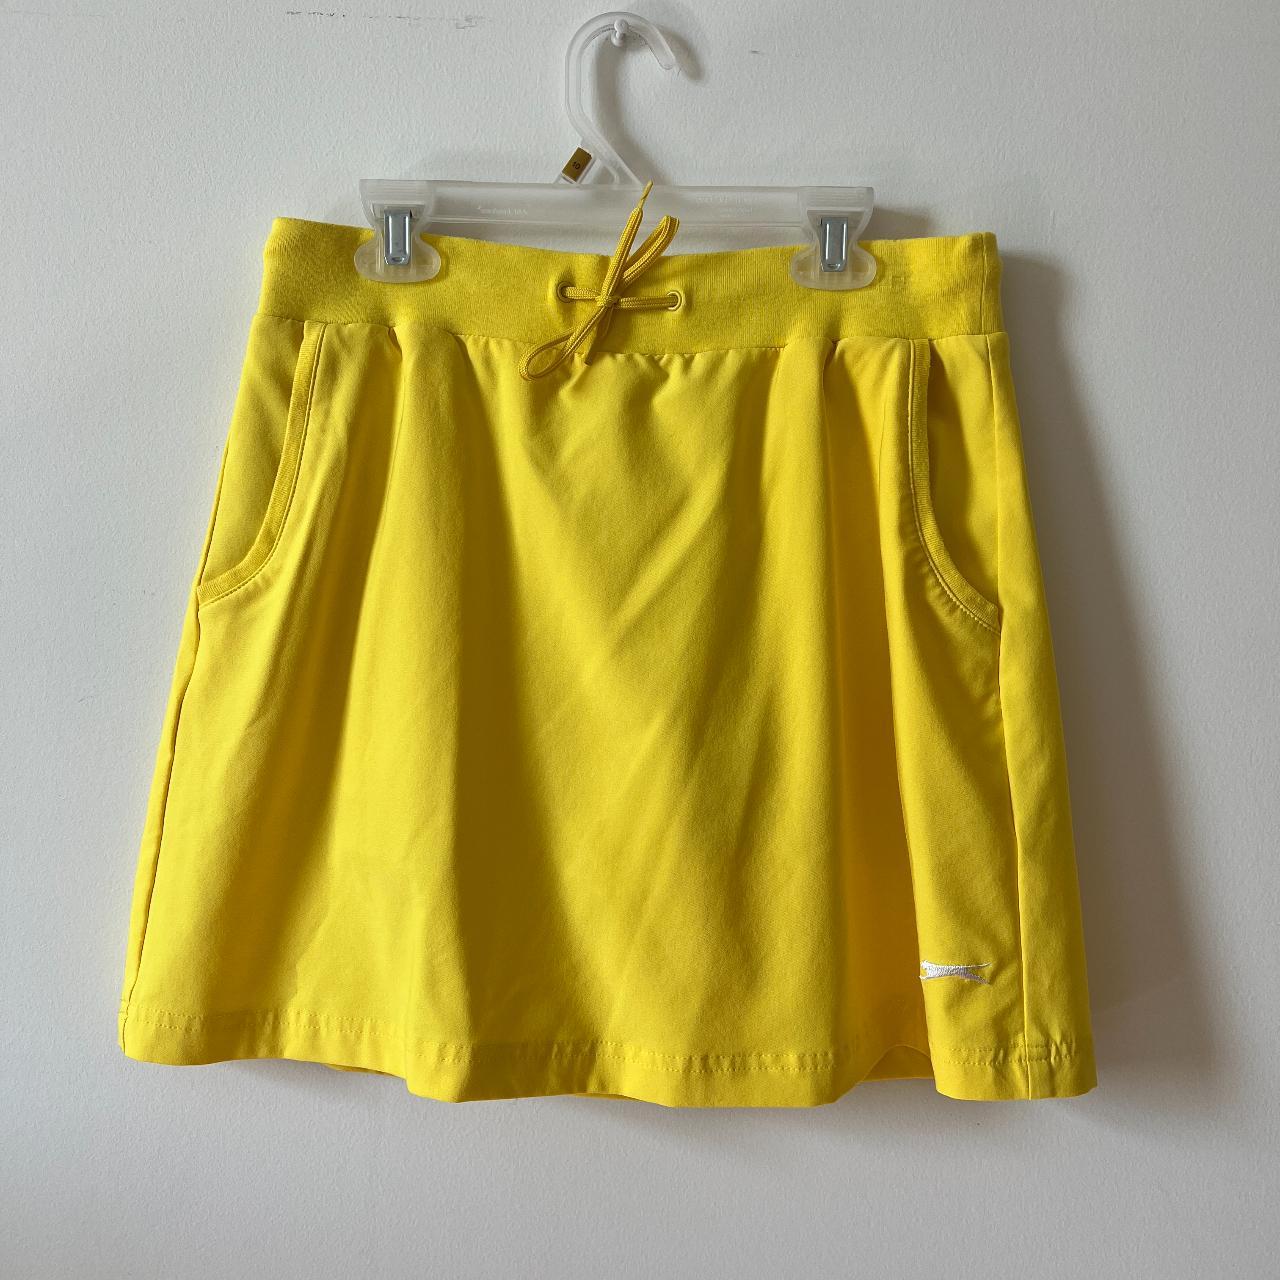 Slazenger Women's Yellow Skirt